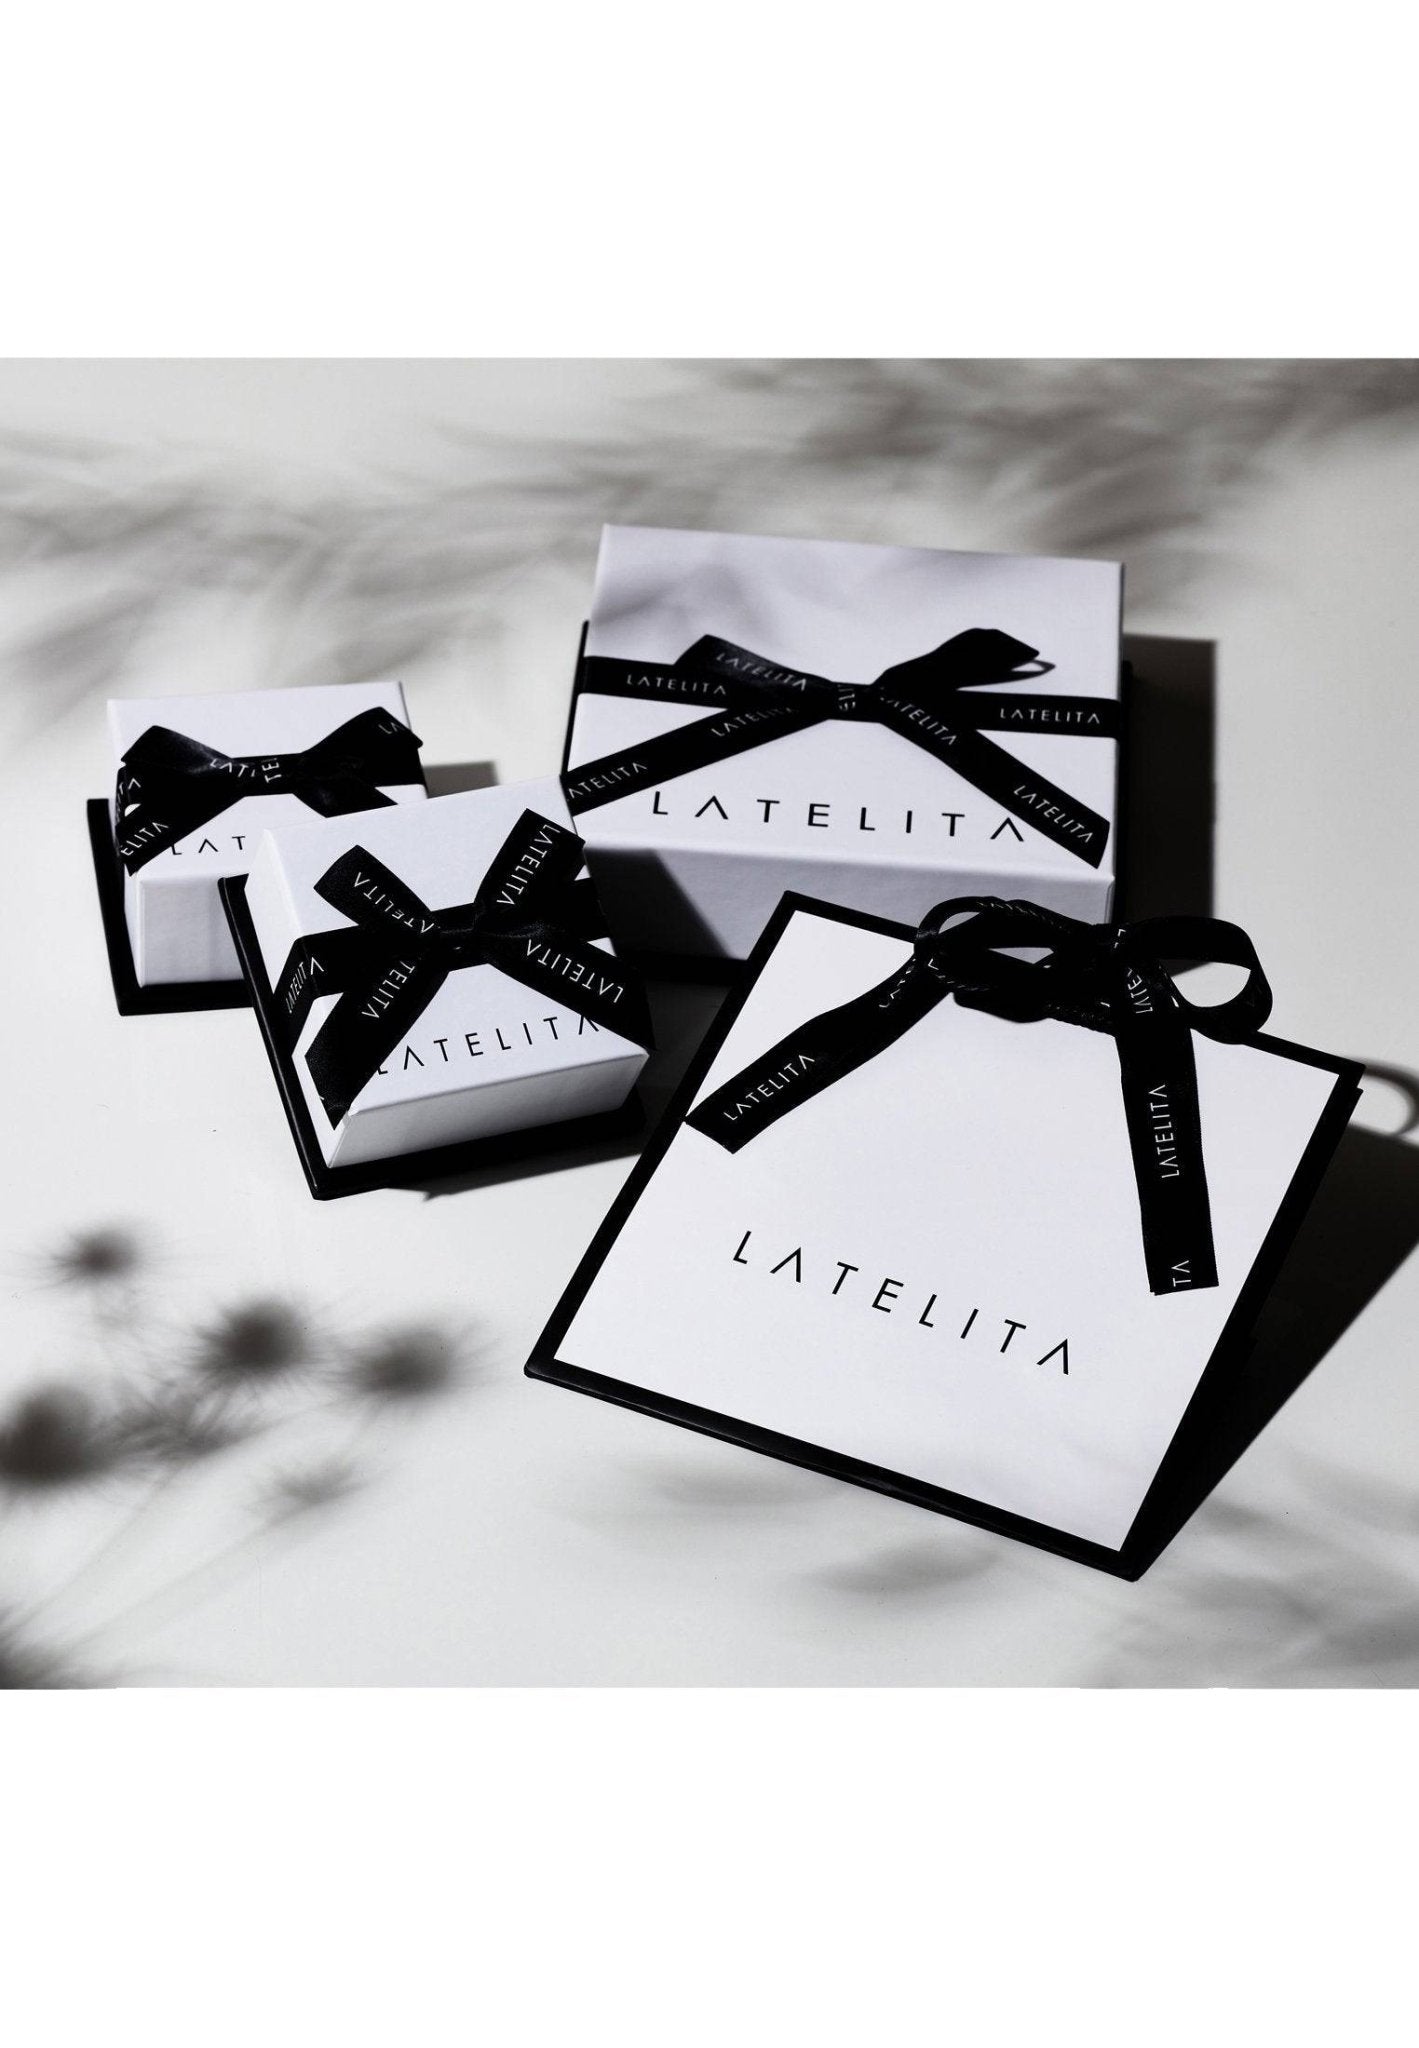 Zara Teardrop Paraiba Tourmaline Gemstone Earrings Silver - LATELITA Earrings